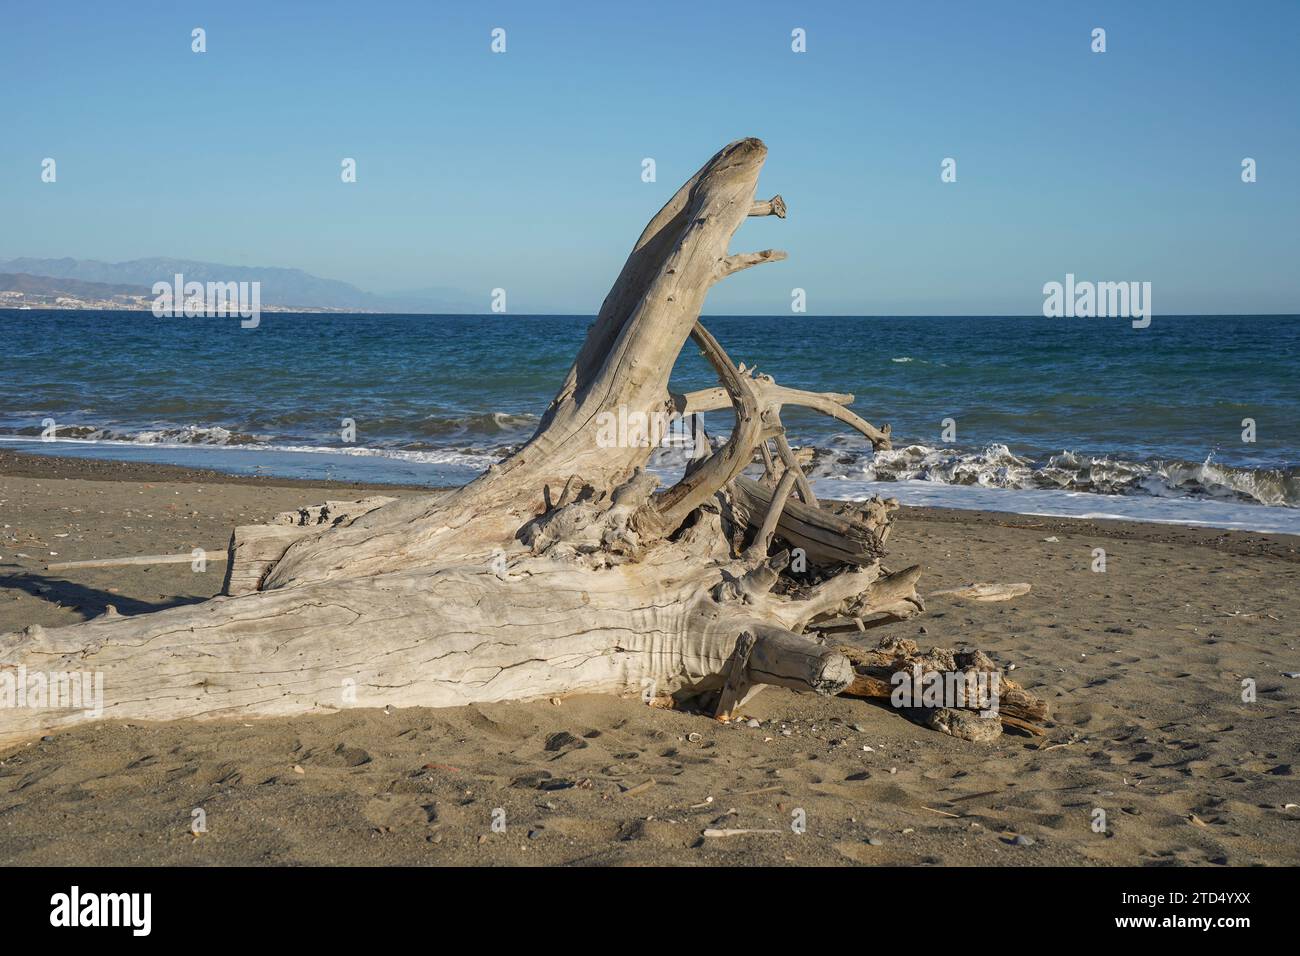 Bois flotté, tronc lavé sur le rivage de Malaga, Espagne. Banque D'Images